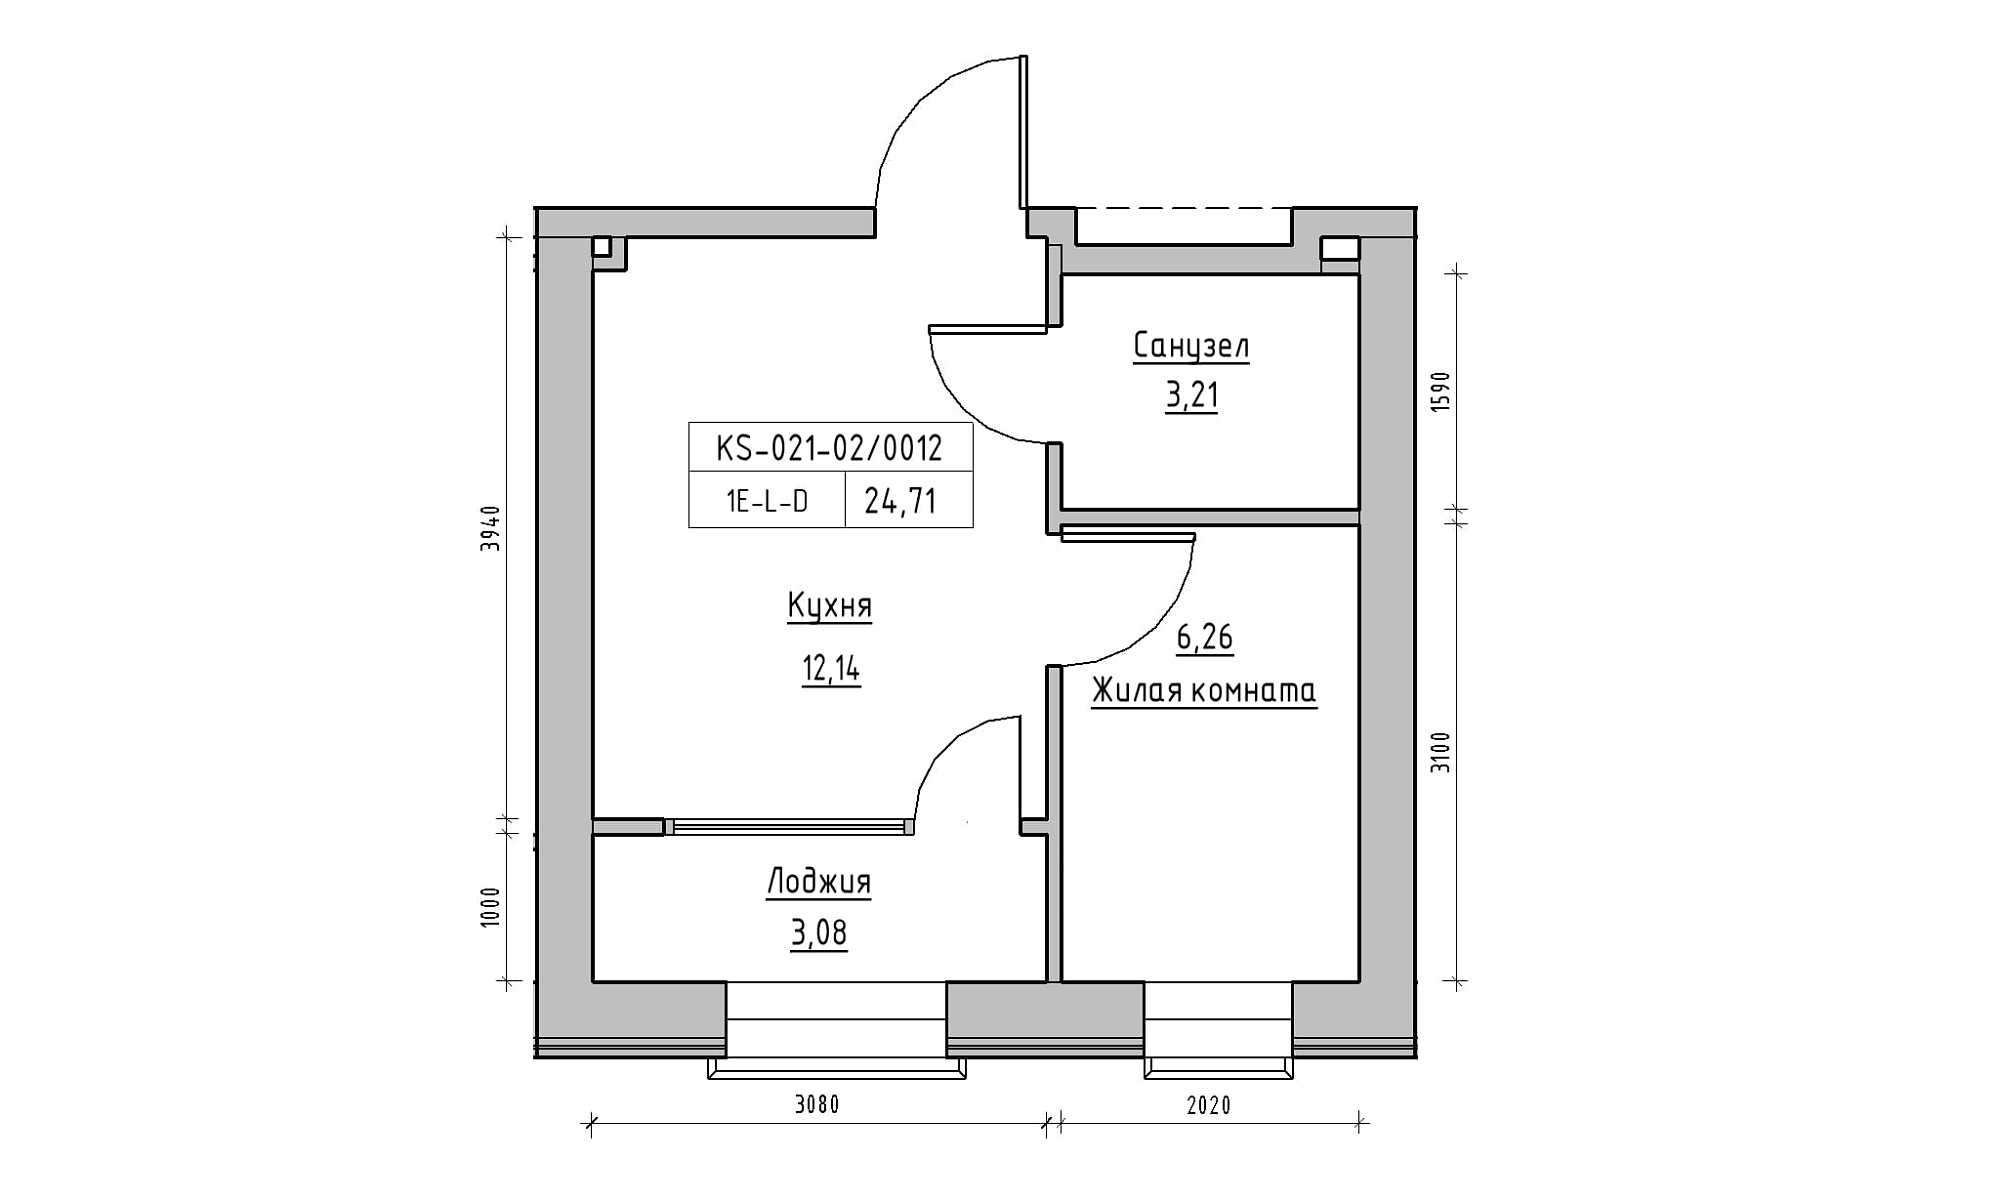 Планування 1-к квартира площею 24.71м2, KS-021-02/0012.